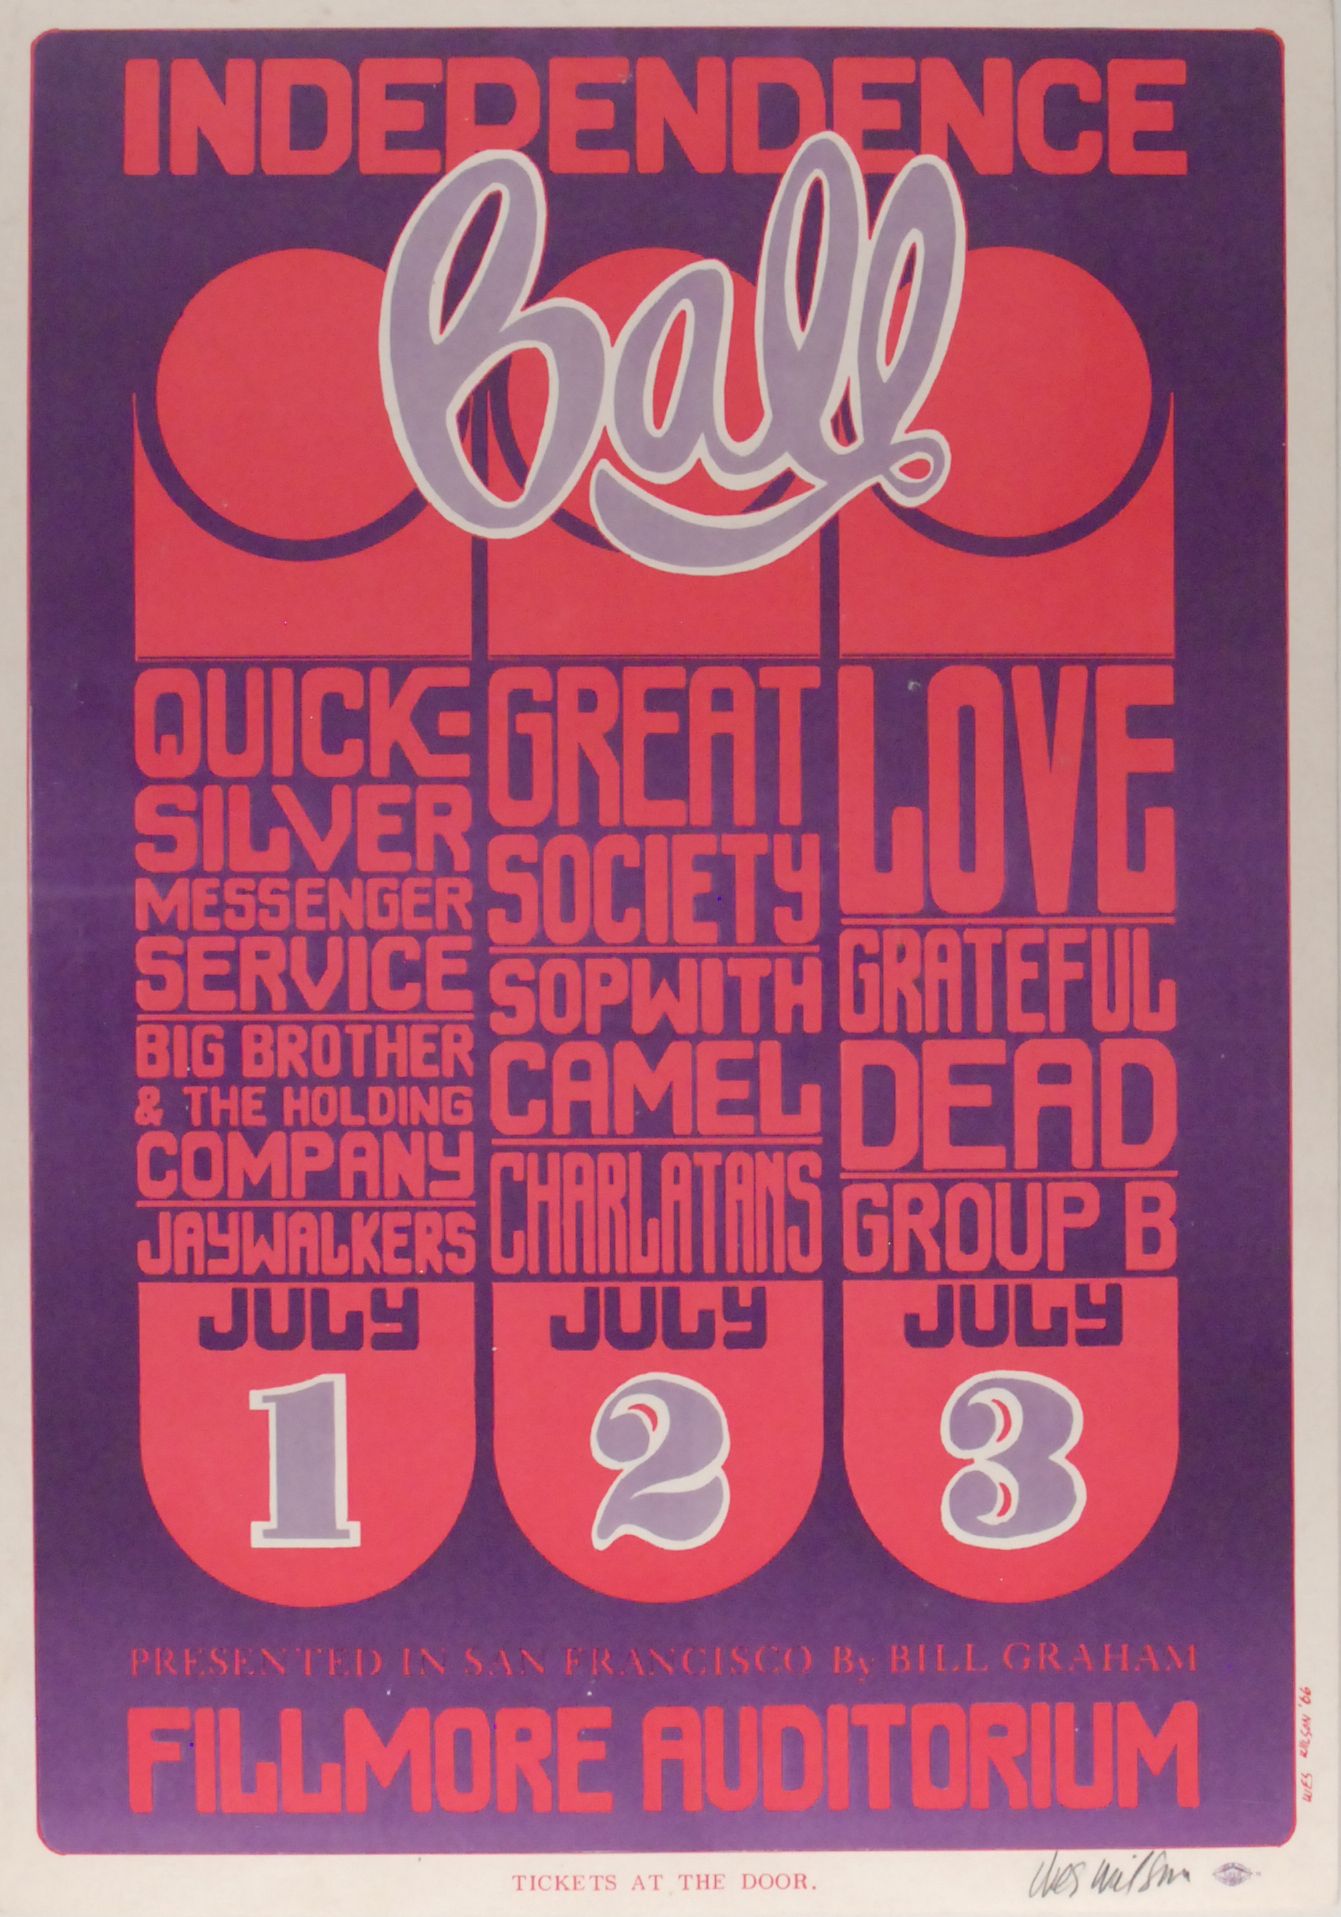 BG-14-OP-1 Concert Poster